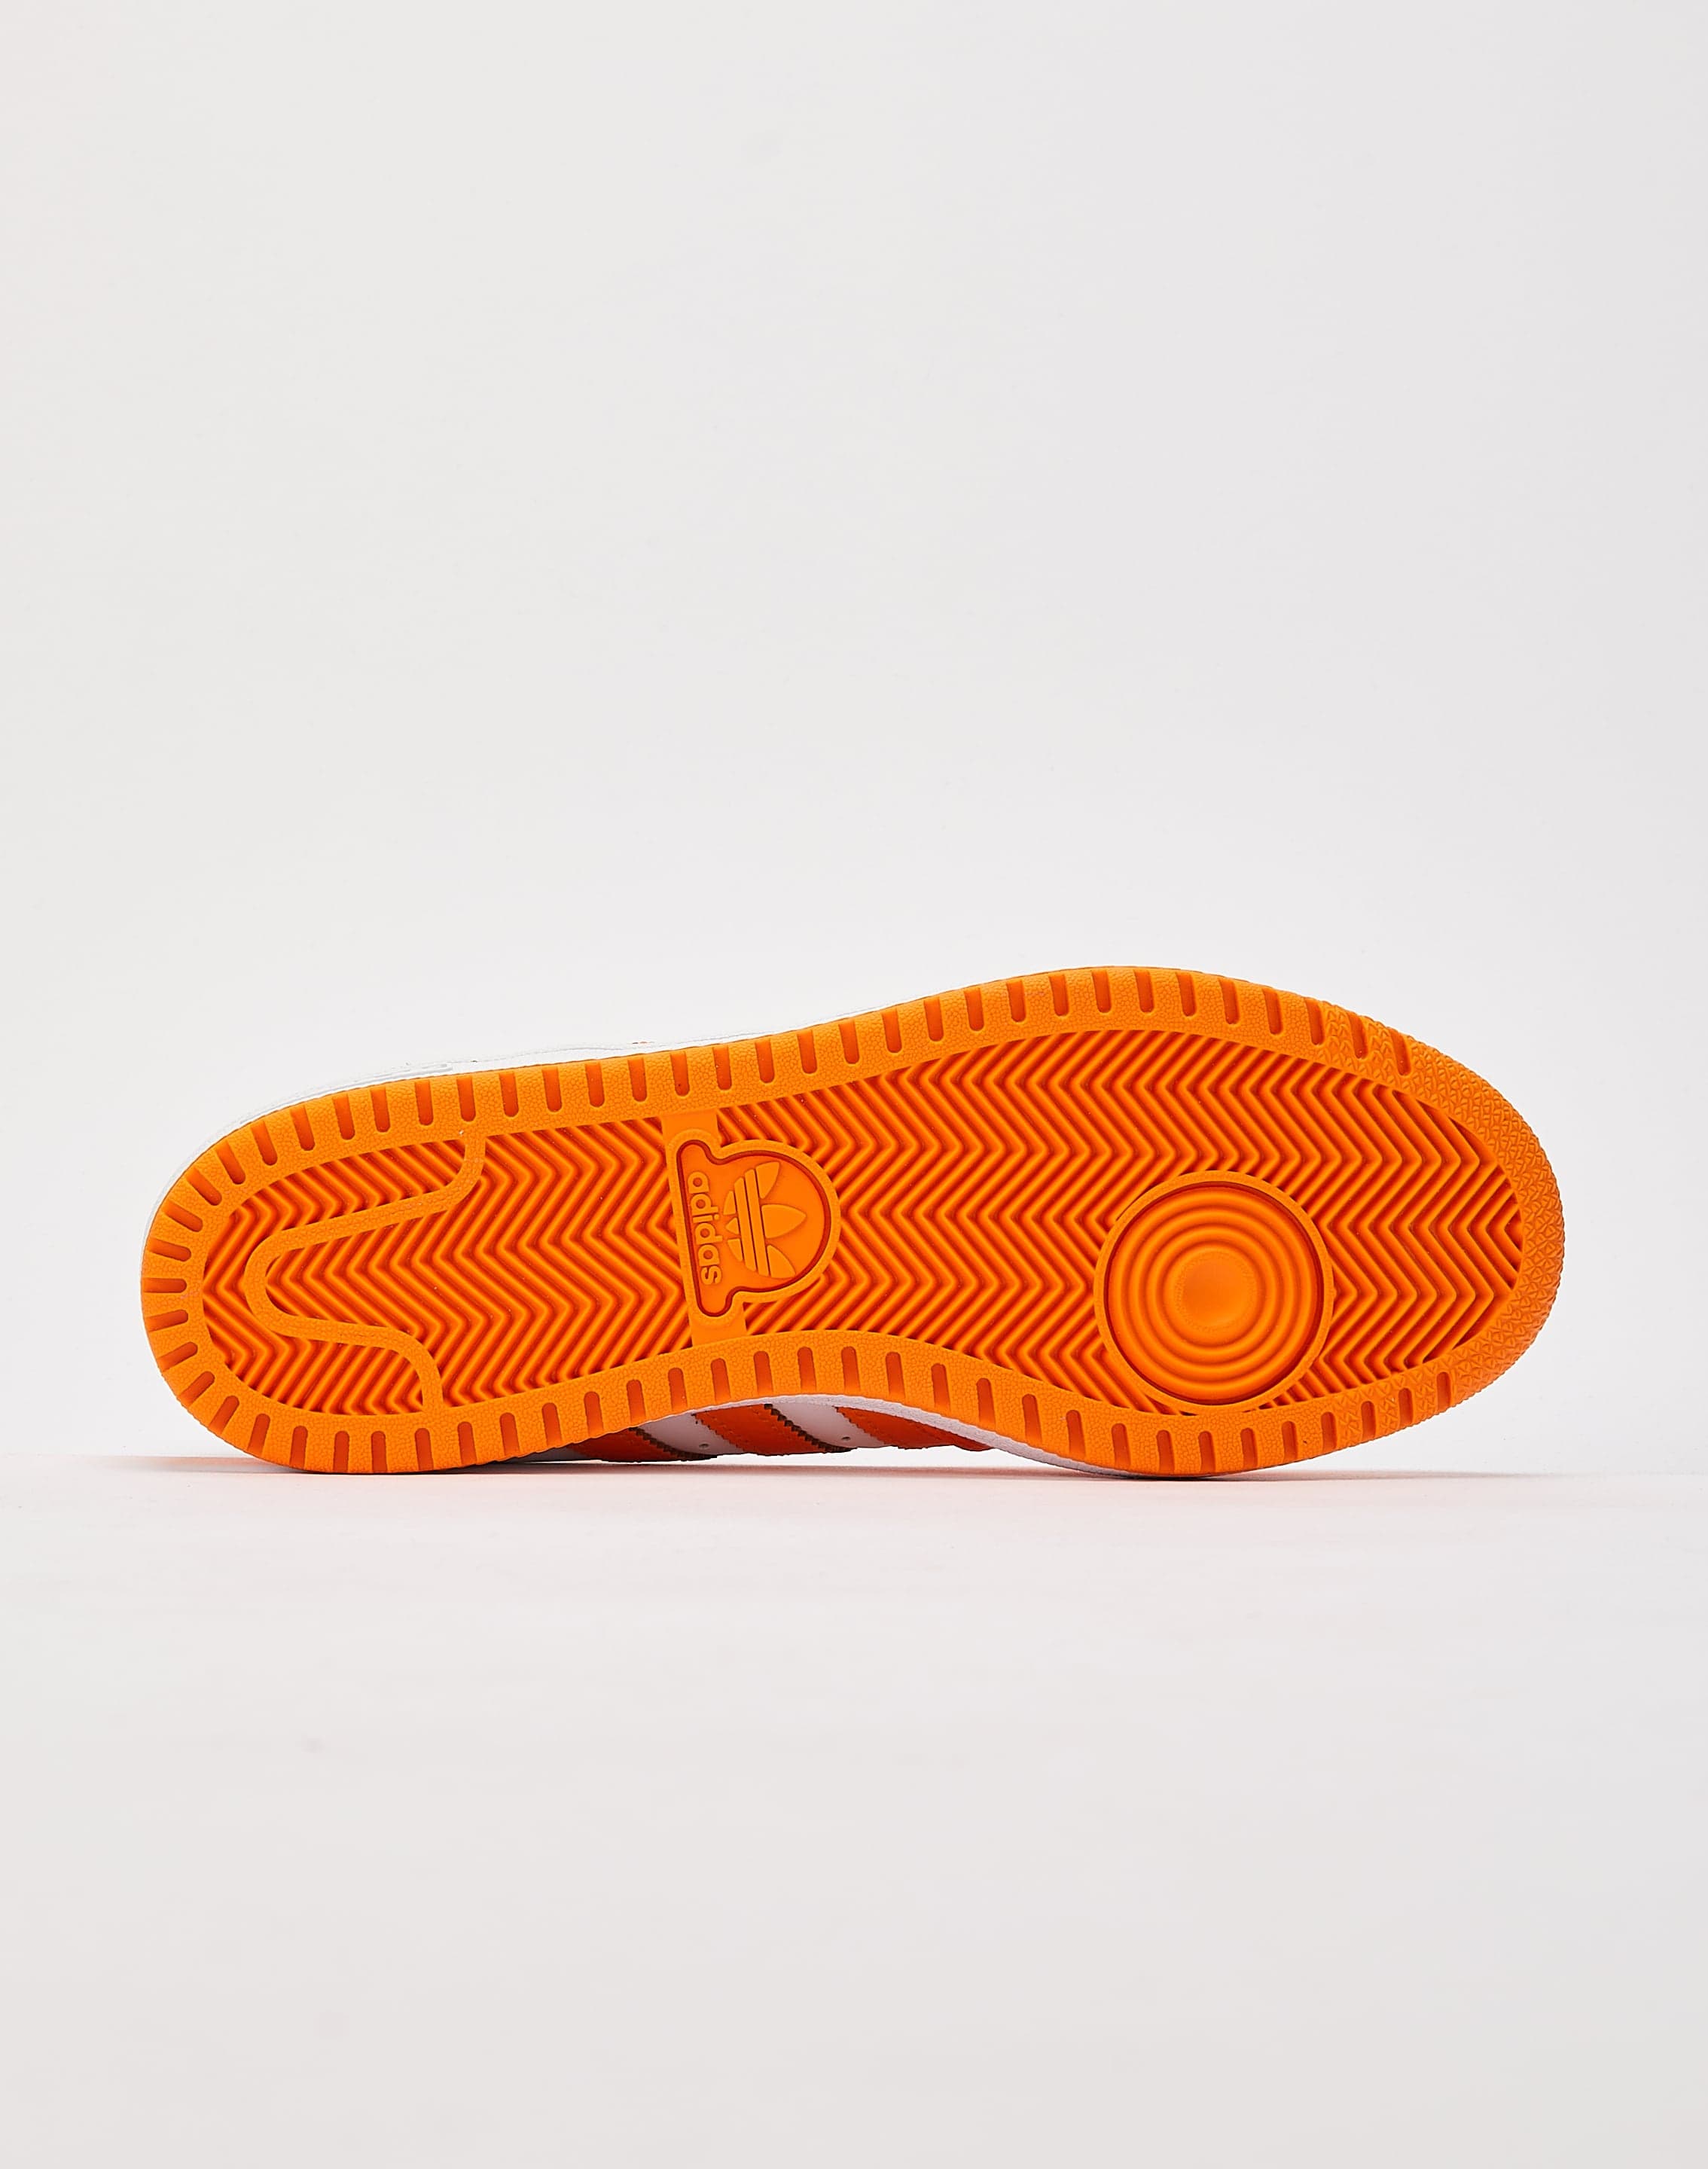 Adidas Men's Originals Top Ten RB Shoes: White/Orange